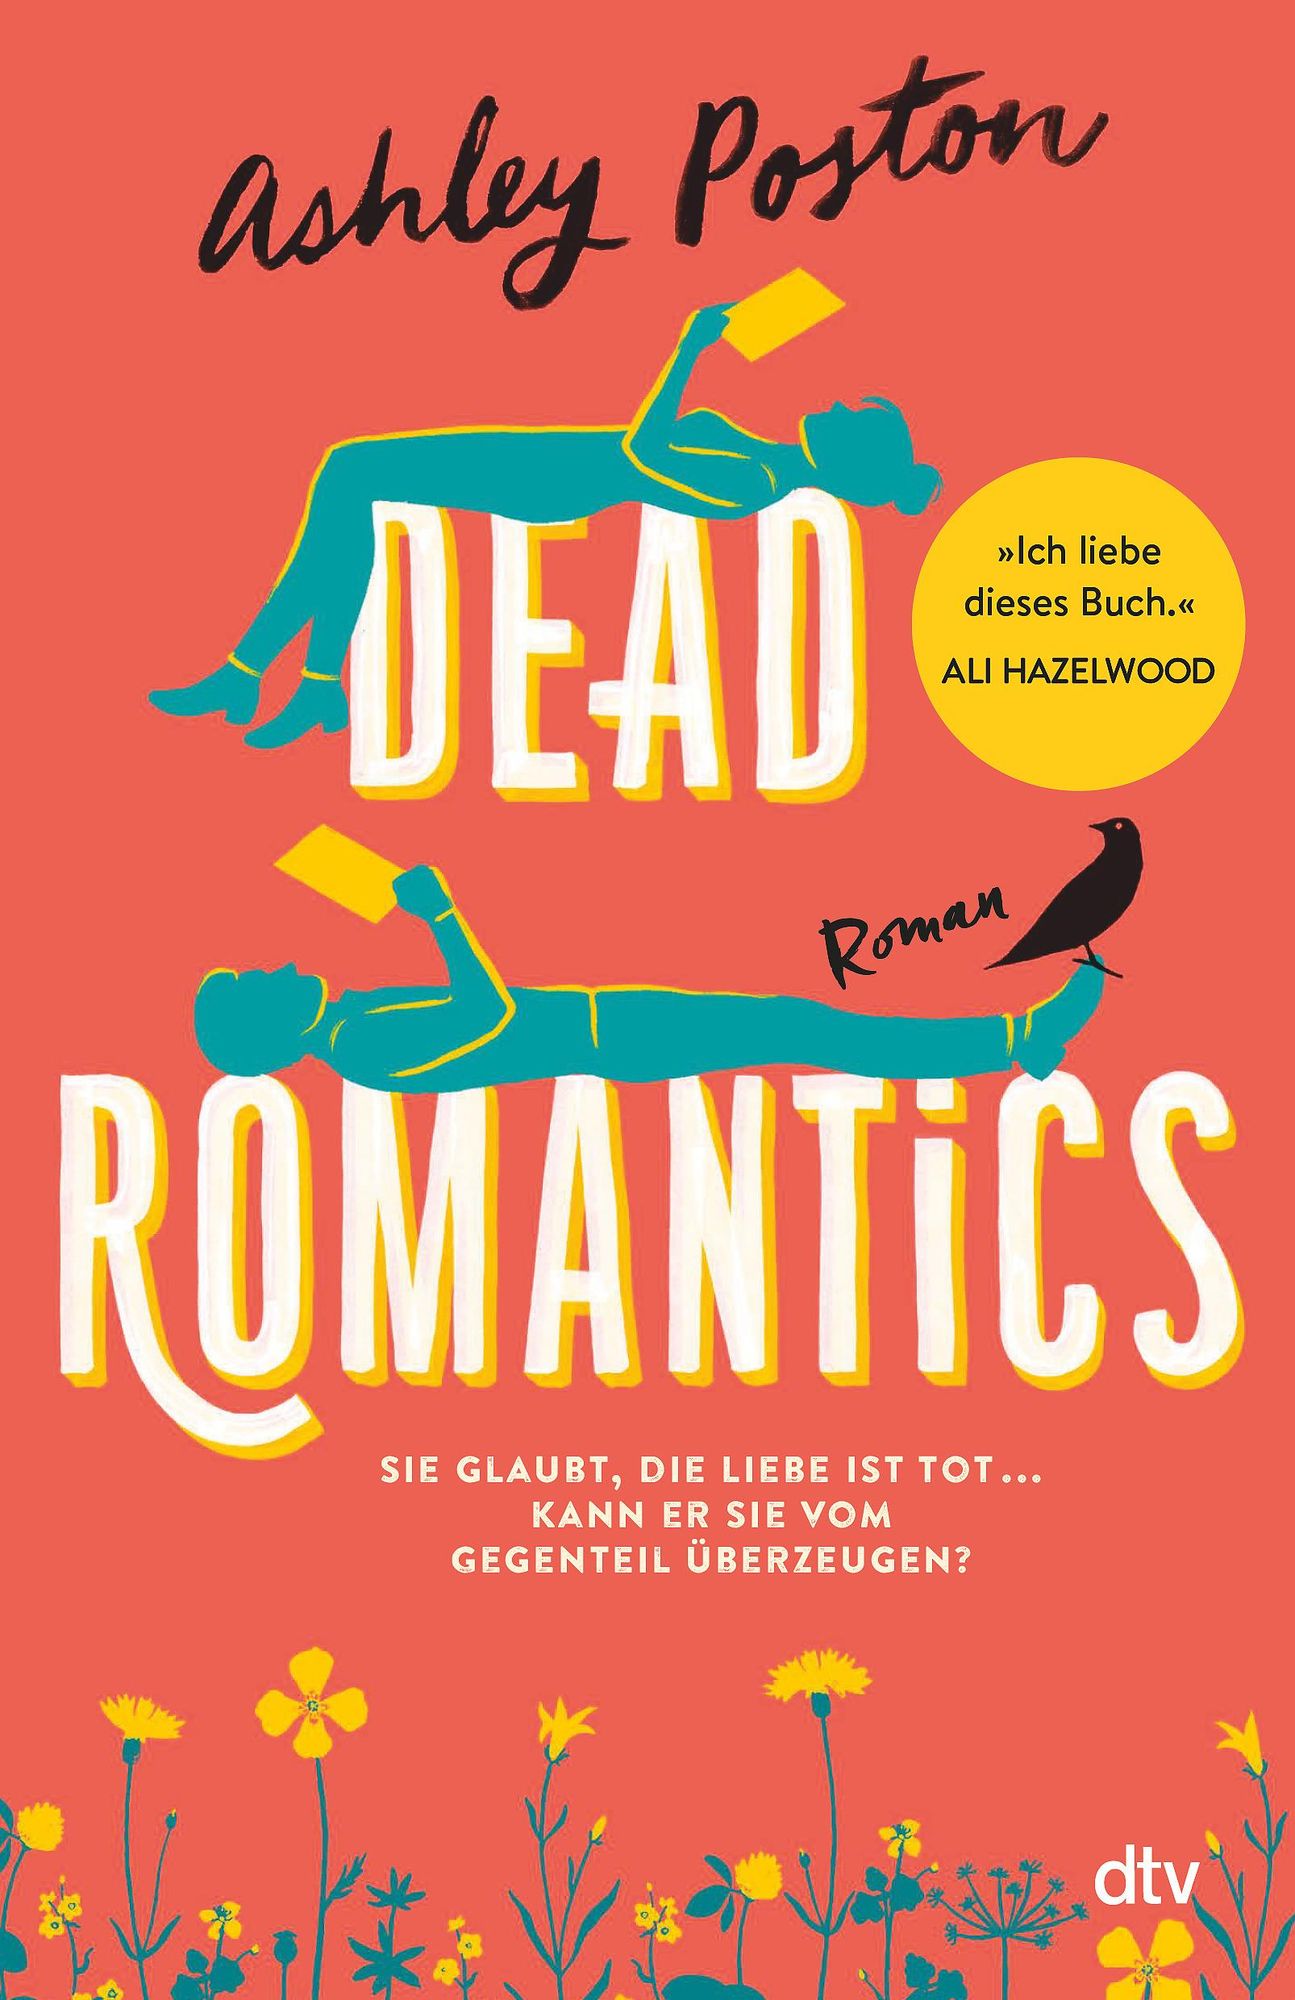 Dead Romantics' von 'Ashley Poston' - Buch - '978-3-423-26354-2'